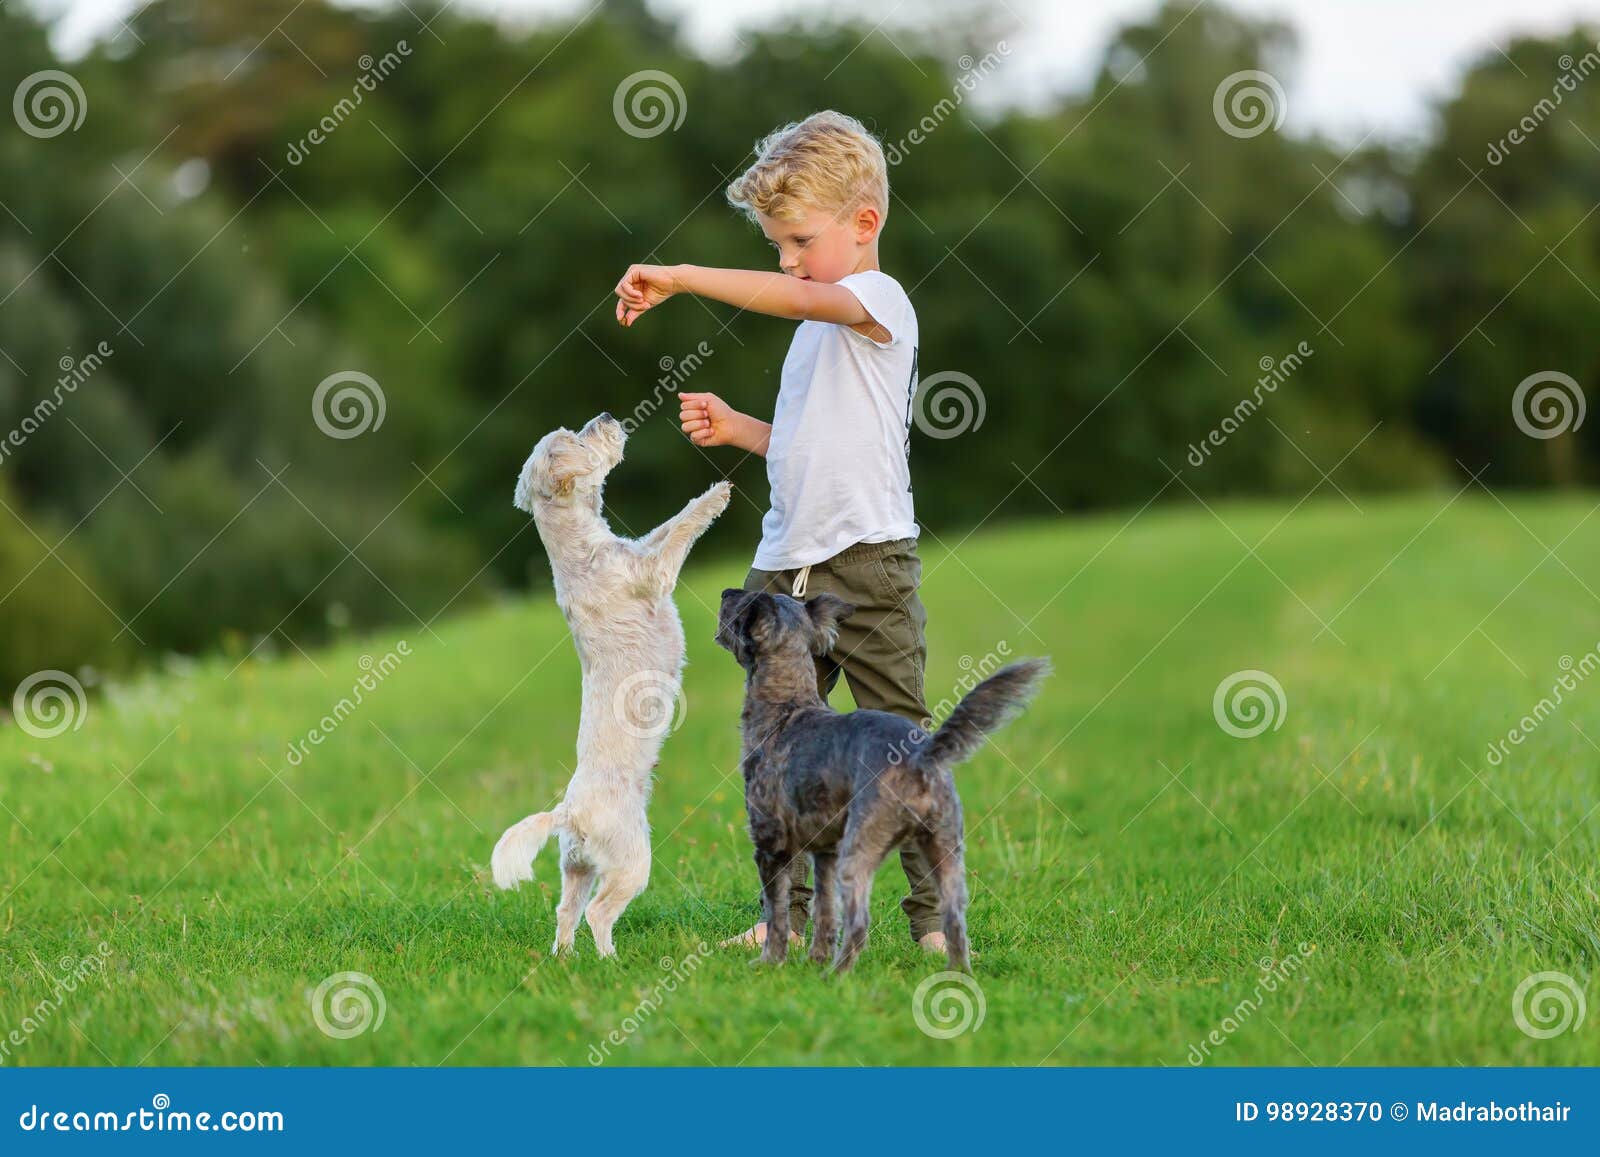 Мальчик играющий с собакой. Мальчик играется с собакой. Подросток играет с собакой. Английские дети играют с собакой.